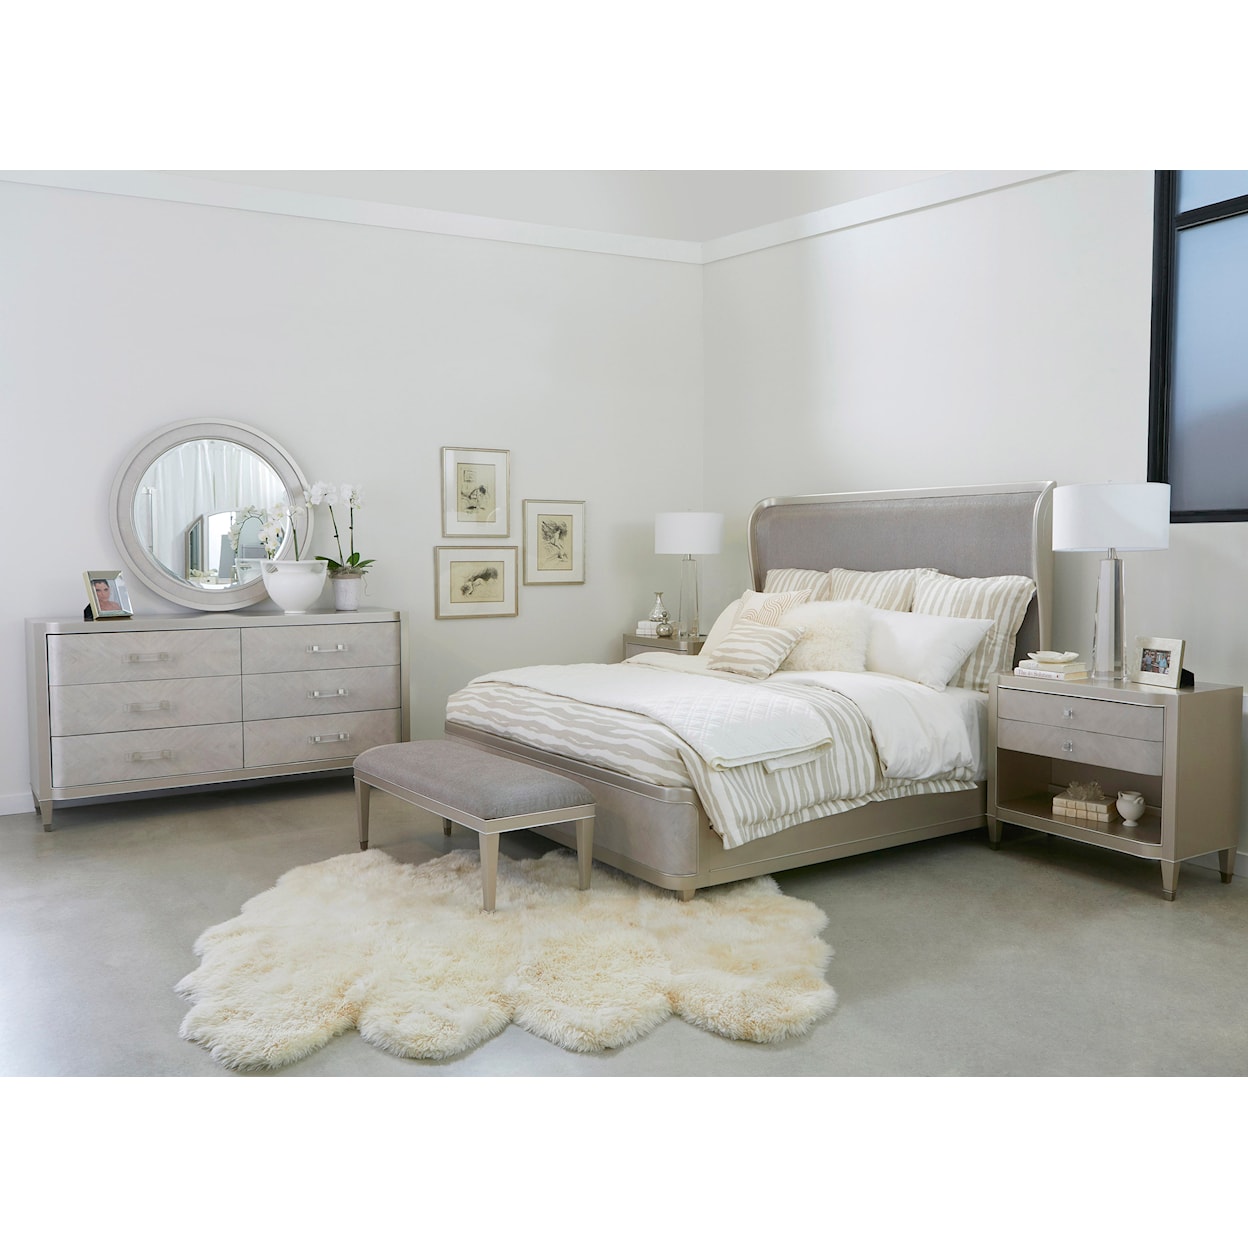 Pulaski Furniture Zoey King Bedroom Set